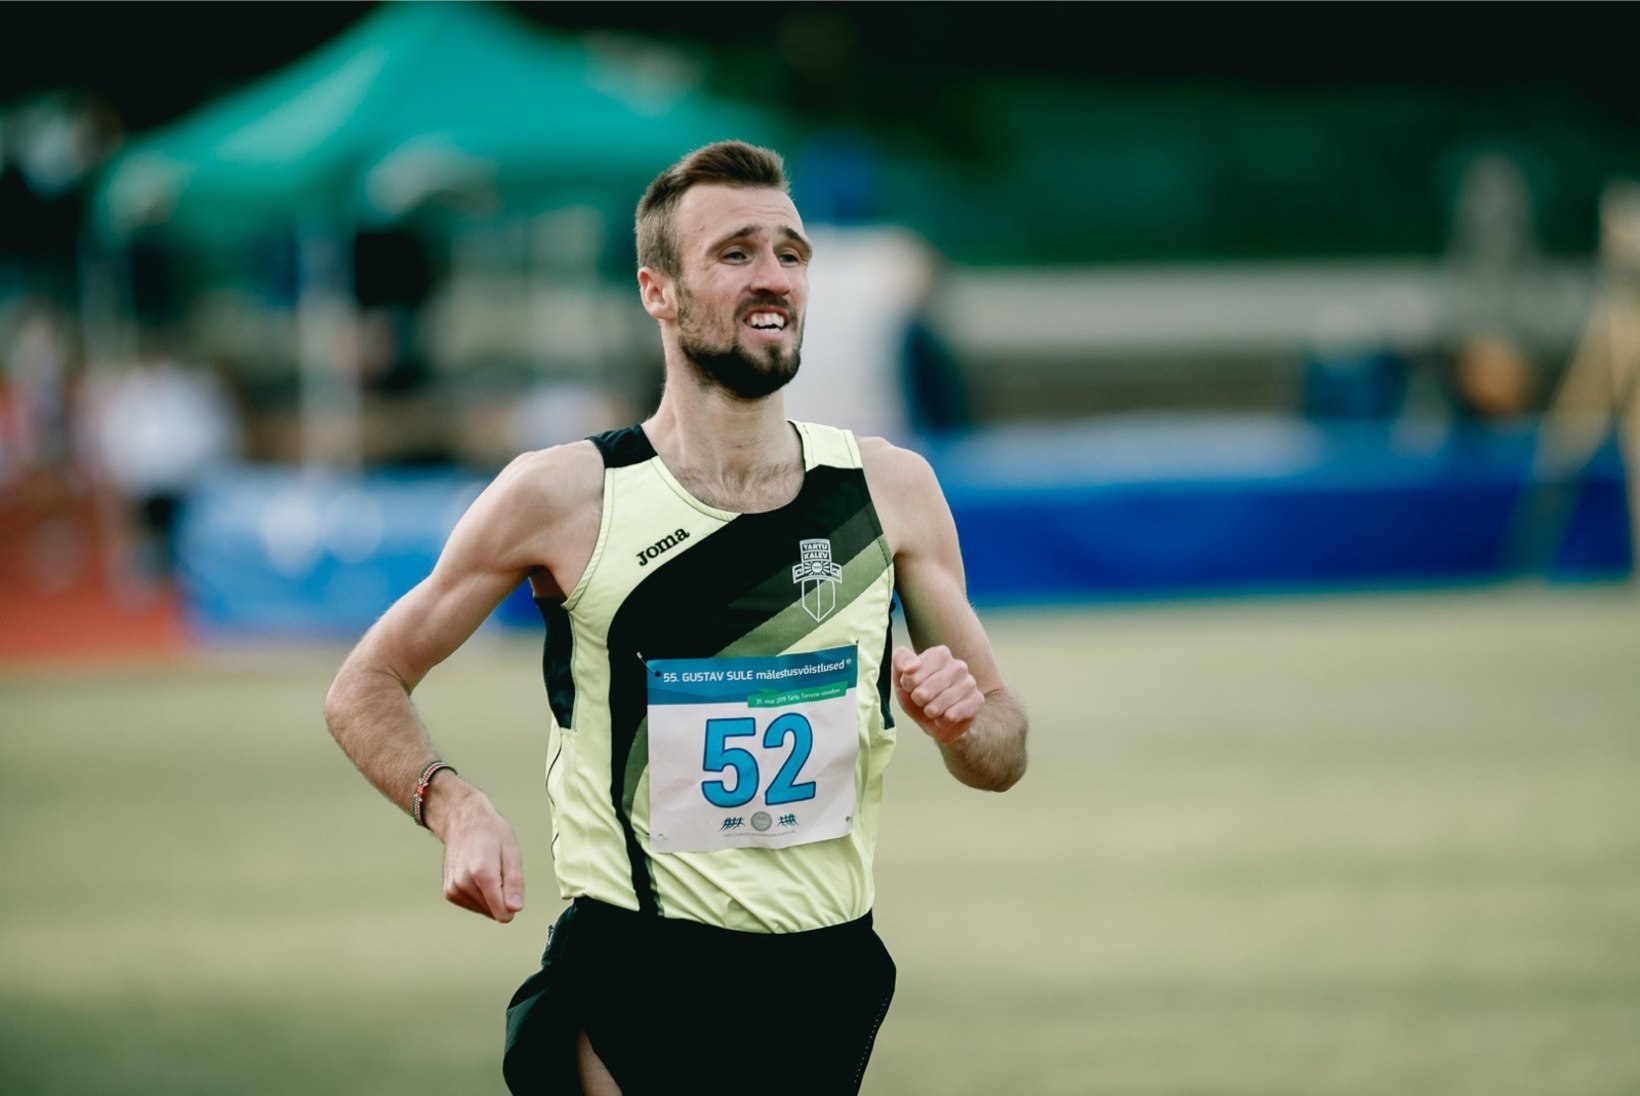 Keeniasse lõksu jäänud Eesti jooksja jõudis lõpuks koju: tervis halvenes ja rahaline seis hakkas kriitiliseks minema